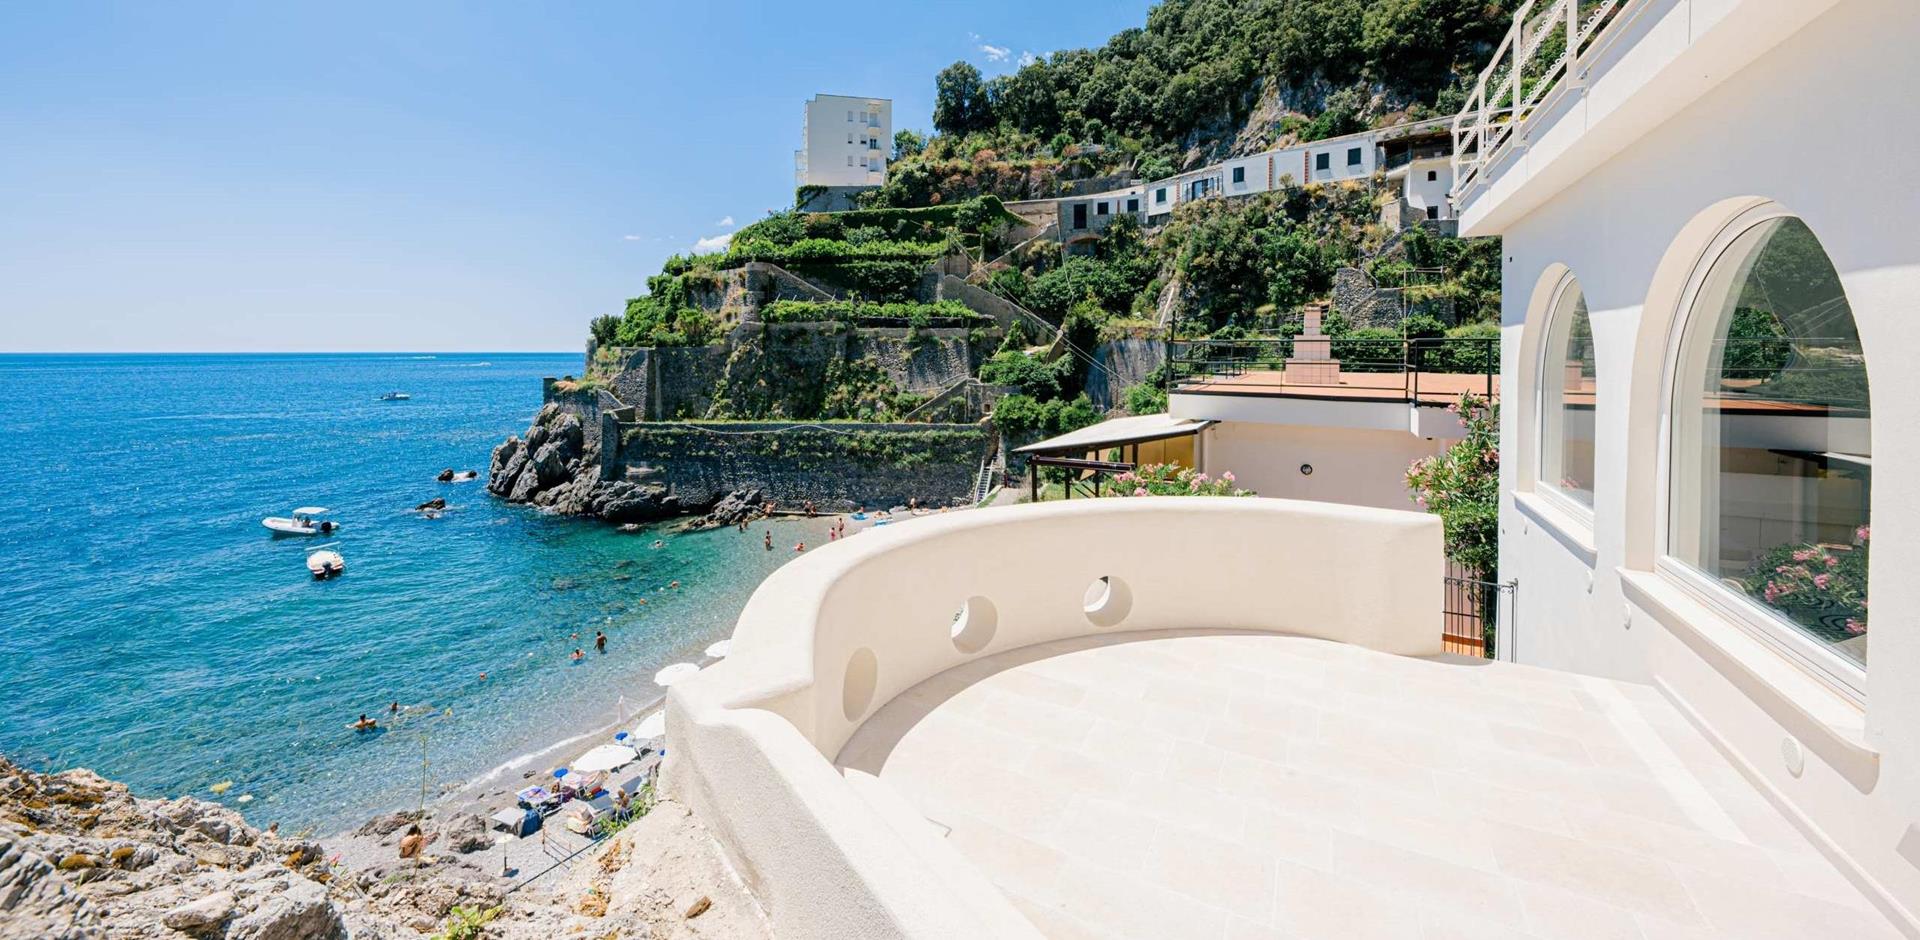 Balcony with view of bay, Casa al Lido, Amalfi Coast, Italy